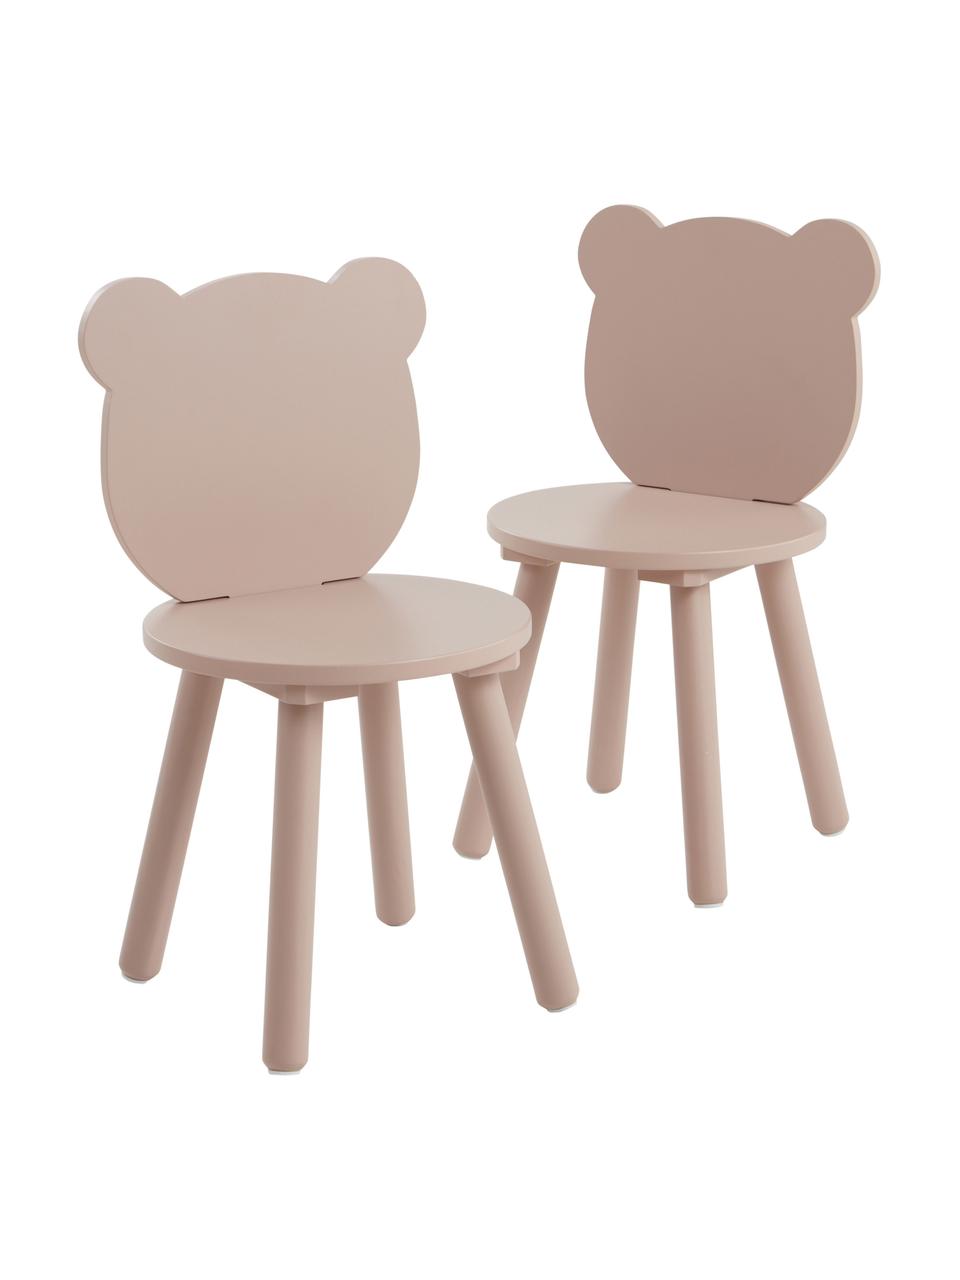 Dřevěné dětské židličky Beary, 2 ks, Borovicové dřevo, lakovaná MDF deska (dřevovláknitá deska střední hustoty), Růžová, Š 30 cm, V 58 cm